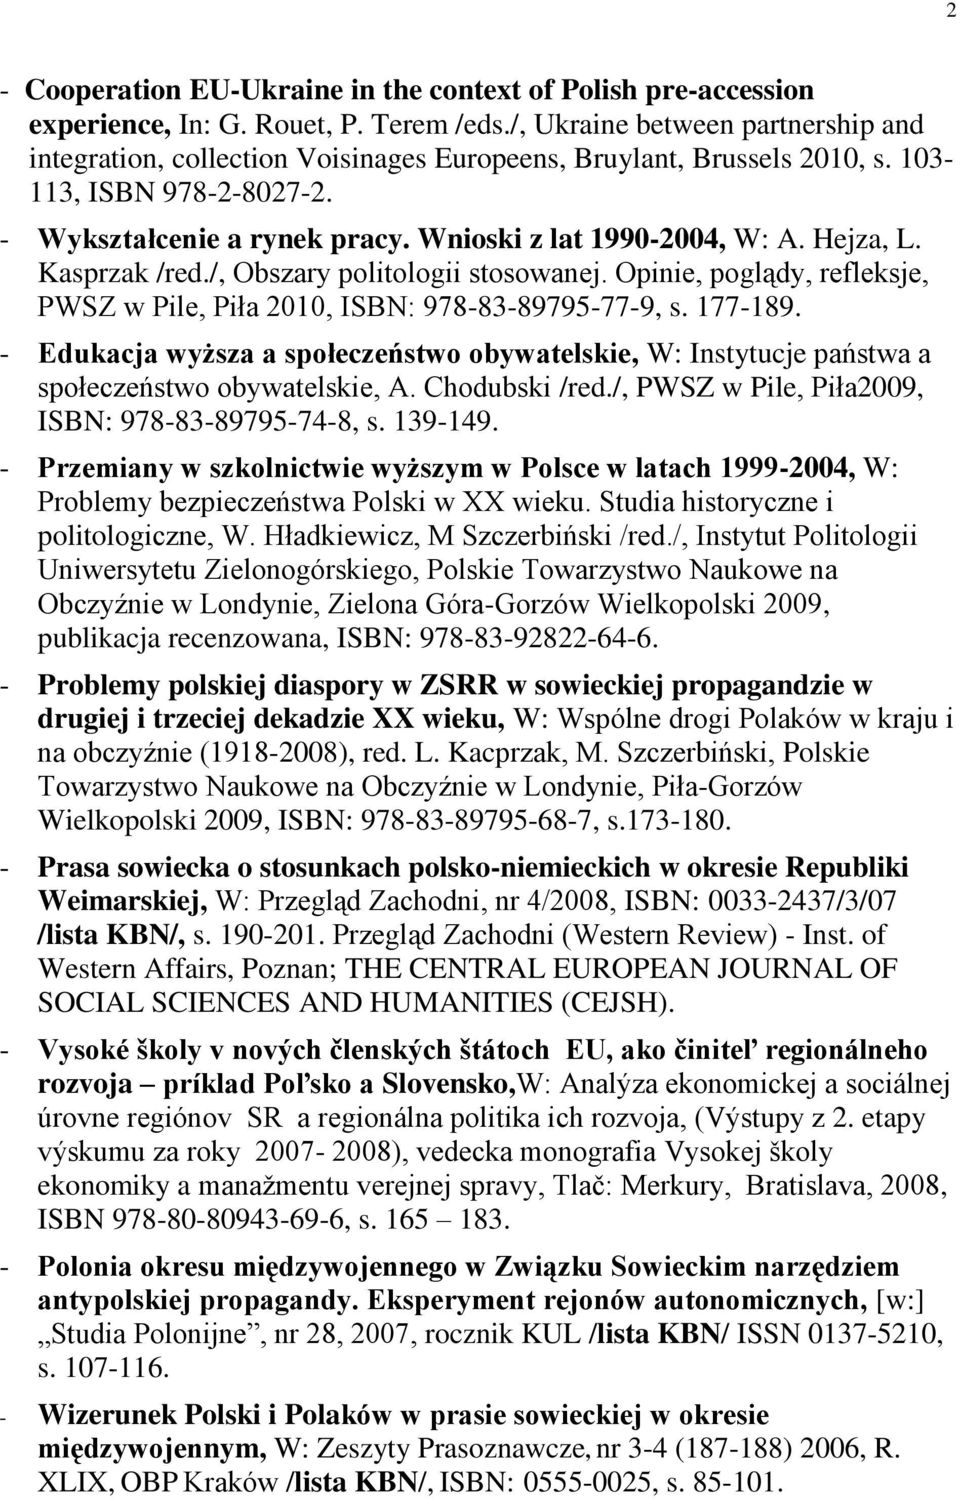 Hejza, L. Kasprzak /red./, Obszary politologii stosowanej. Opinie, poglądy, refleksje, PWSZ w Pile, Piła 2010, ISBN: 978-83-89795-77-9, s. 177-189.